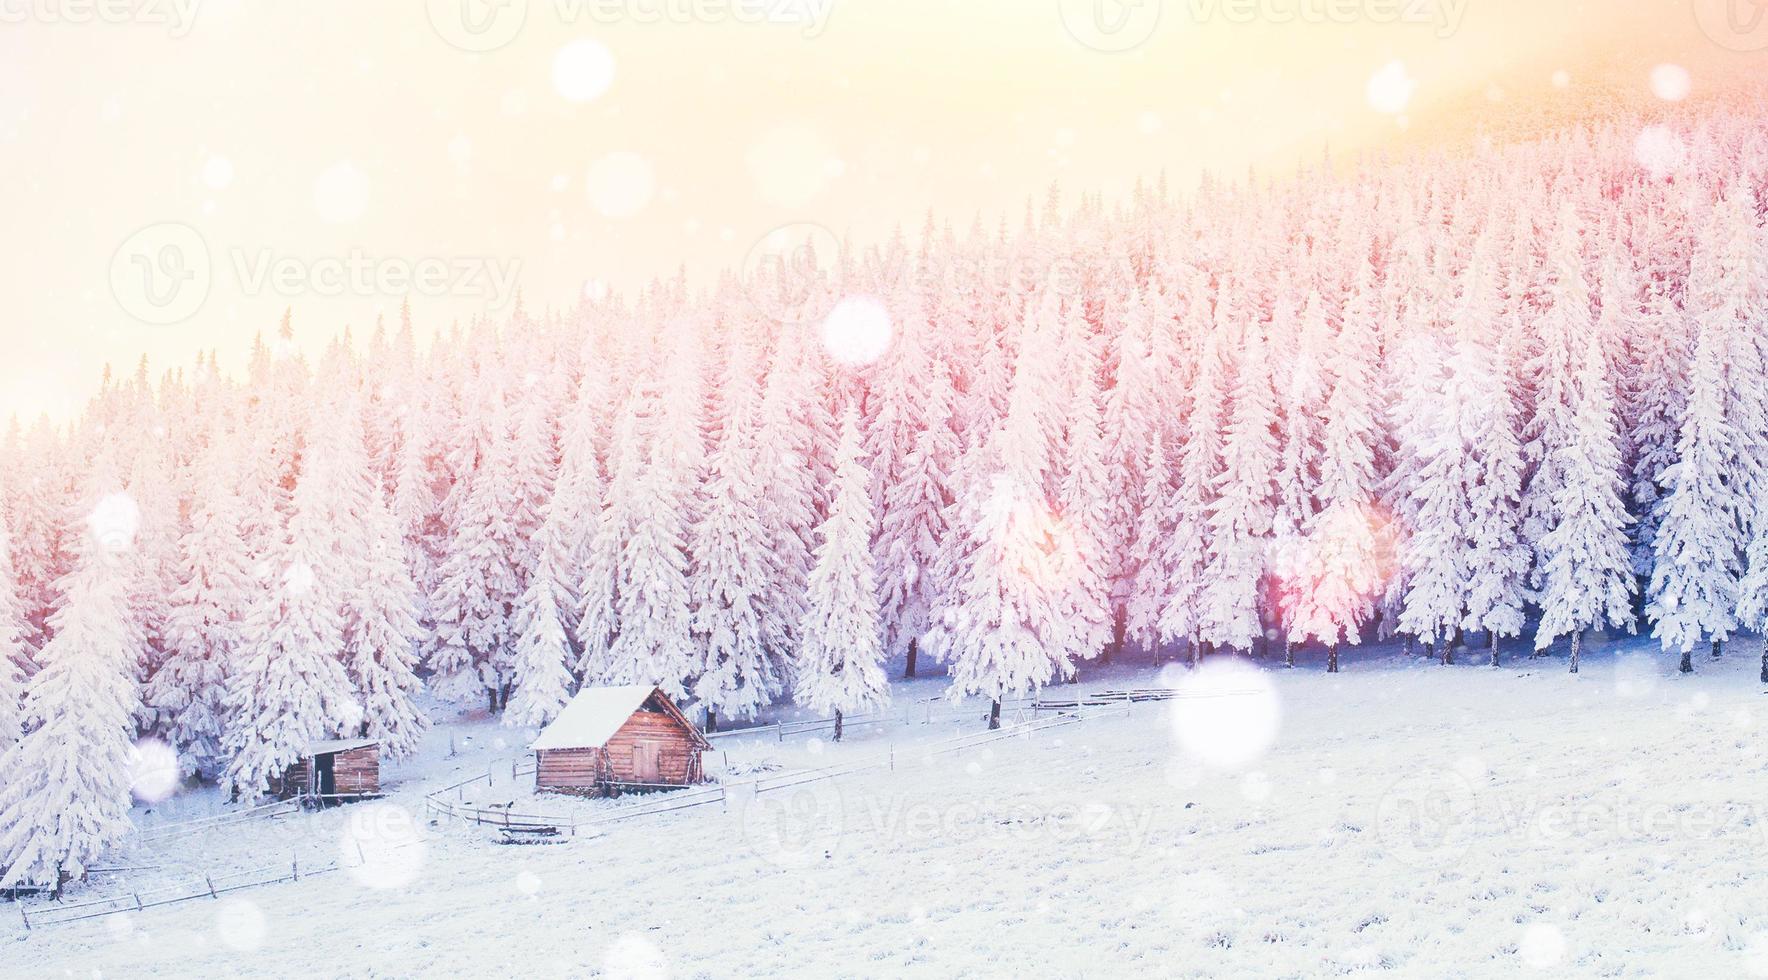 cabaña en las montañas en invierno, fondo con algo de altura suave foto